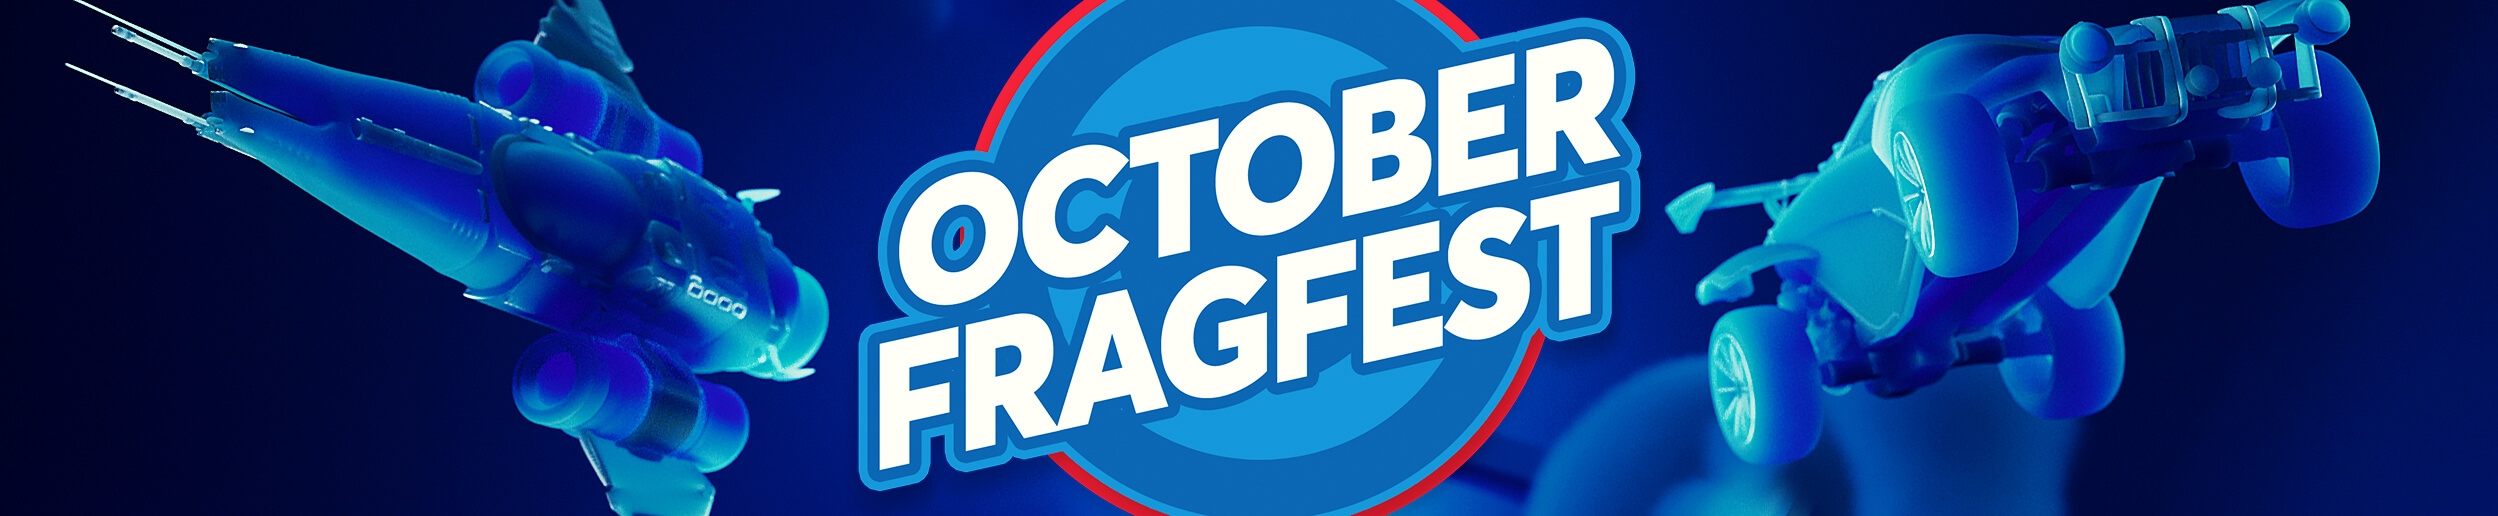 October Fragfest